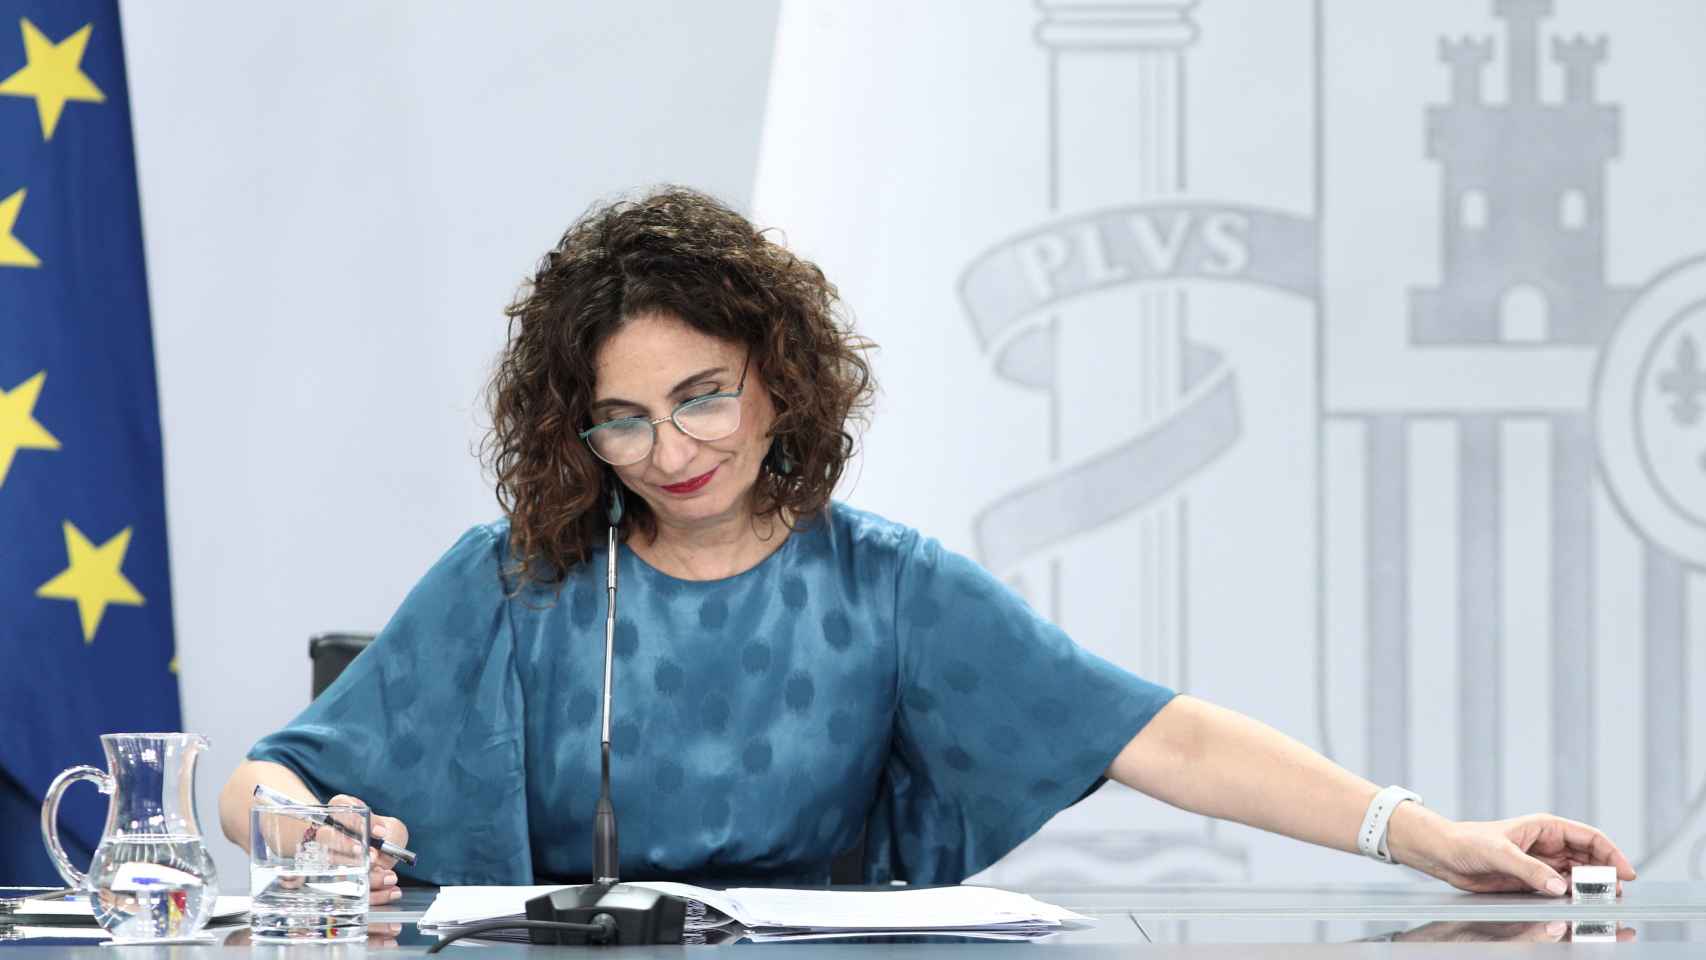 María Jesús Montero, en la rueda de prensa posterior al Consejo de Ministros.